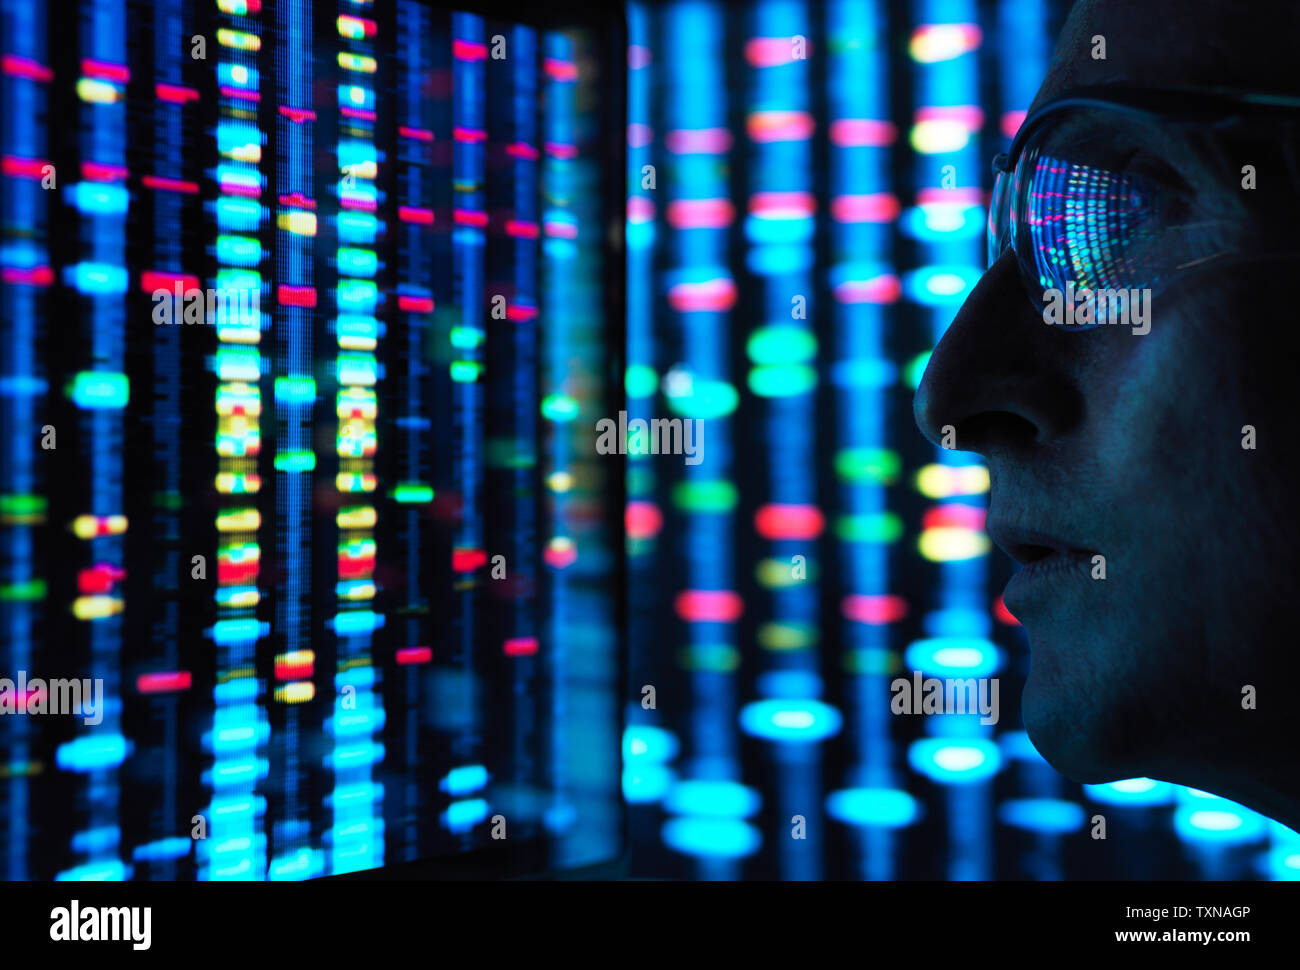 La recherche génétique de l'ADN visualisation scientifique, information sur les écrans Banque D'Images